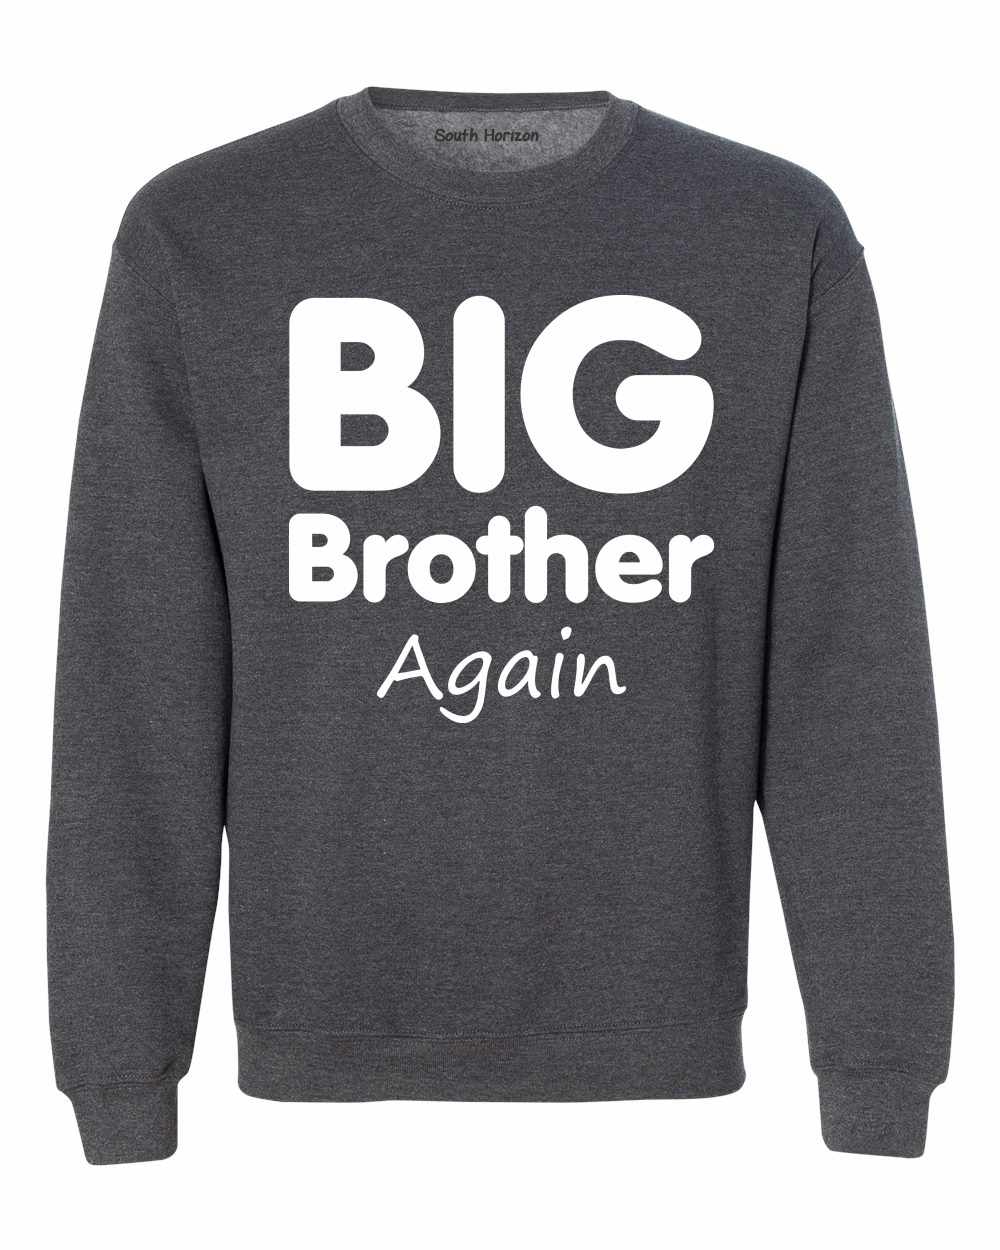 Big Brother Again on SweatShirt (#858-11)